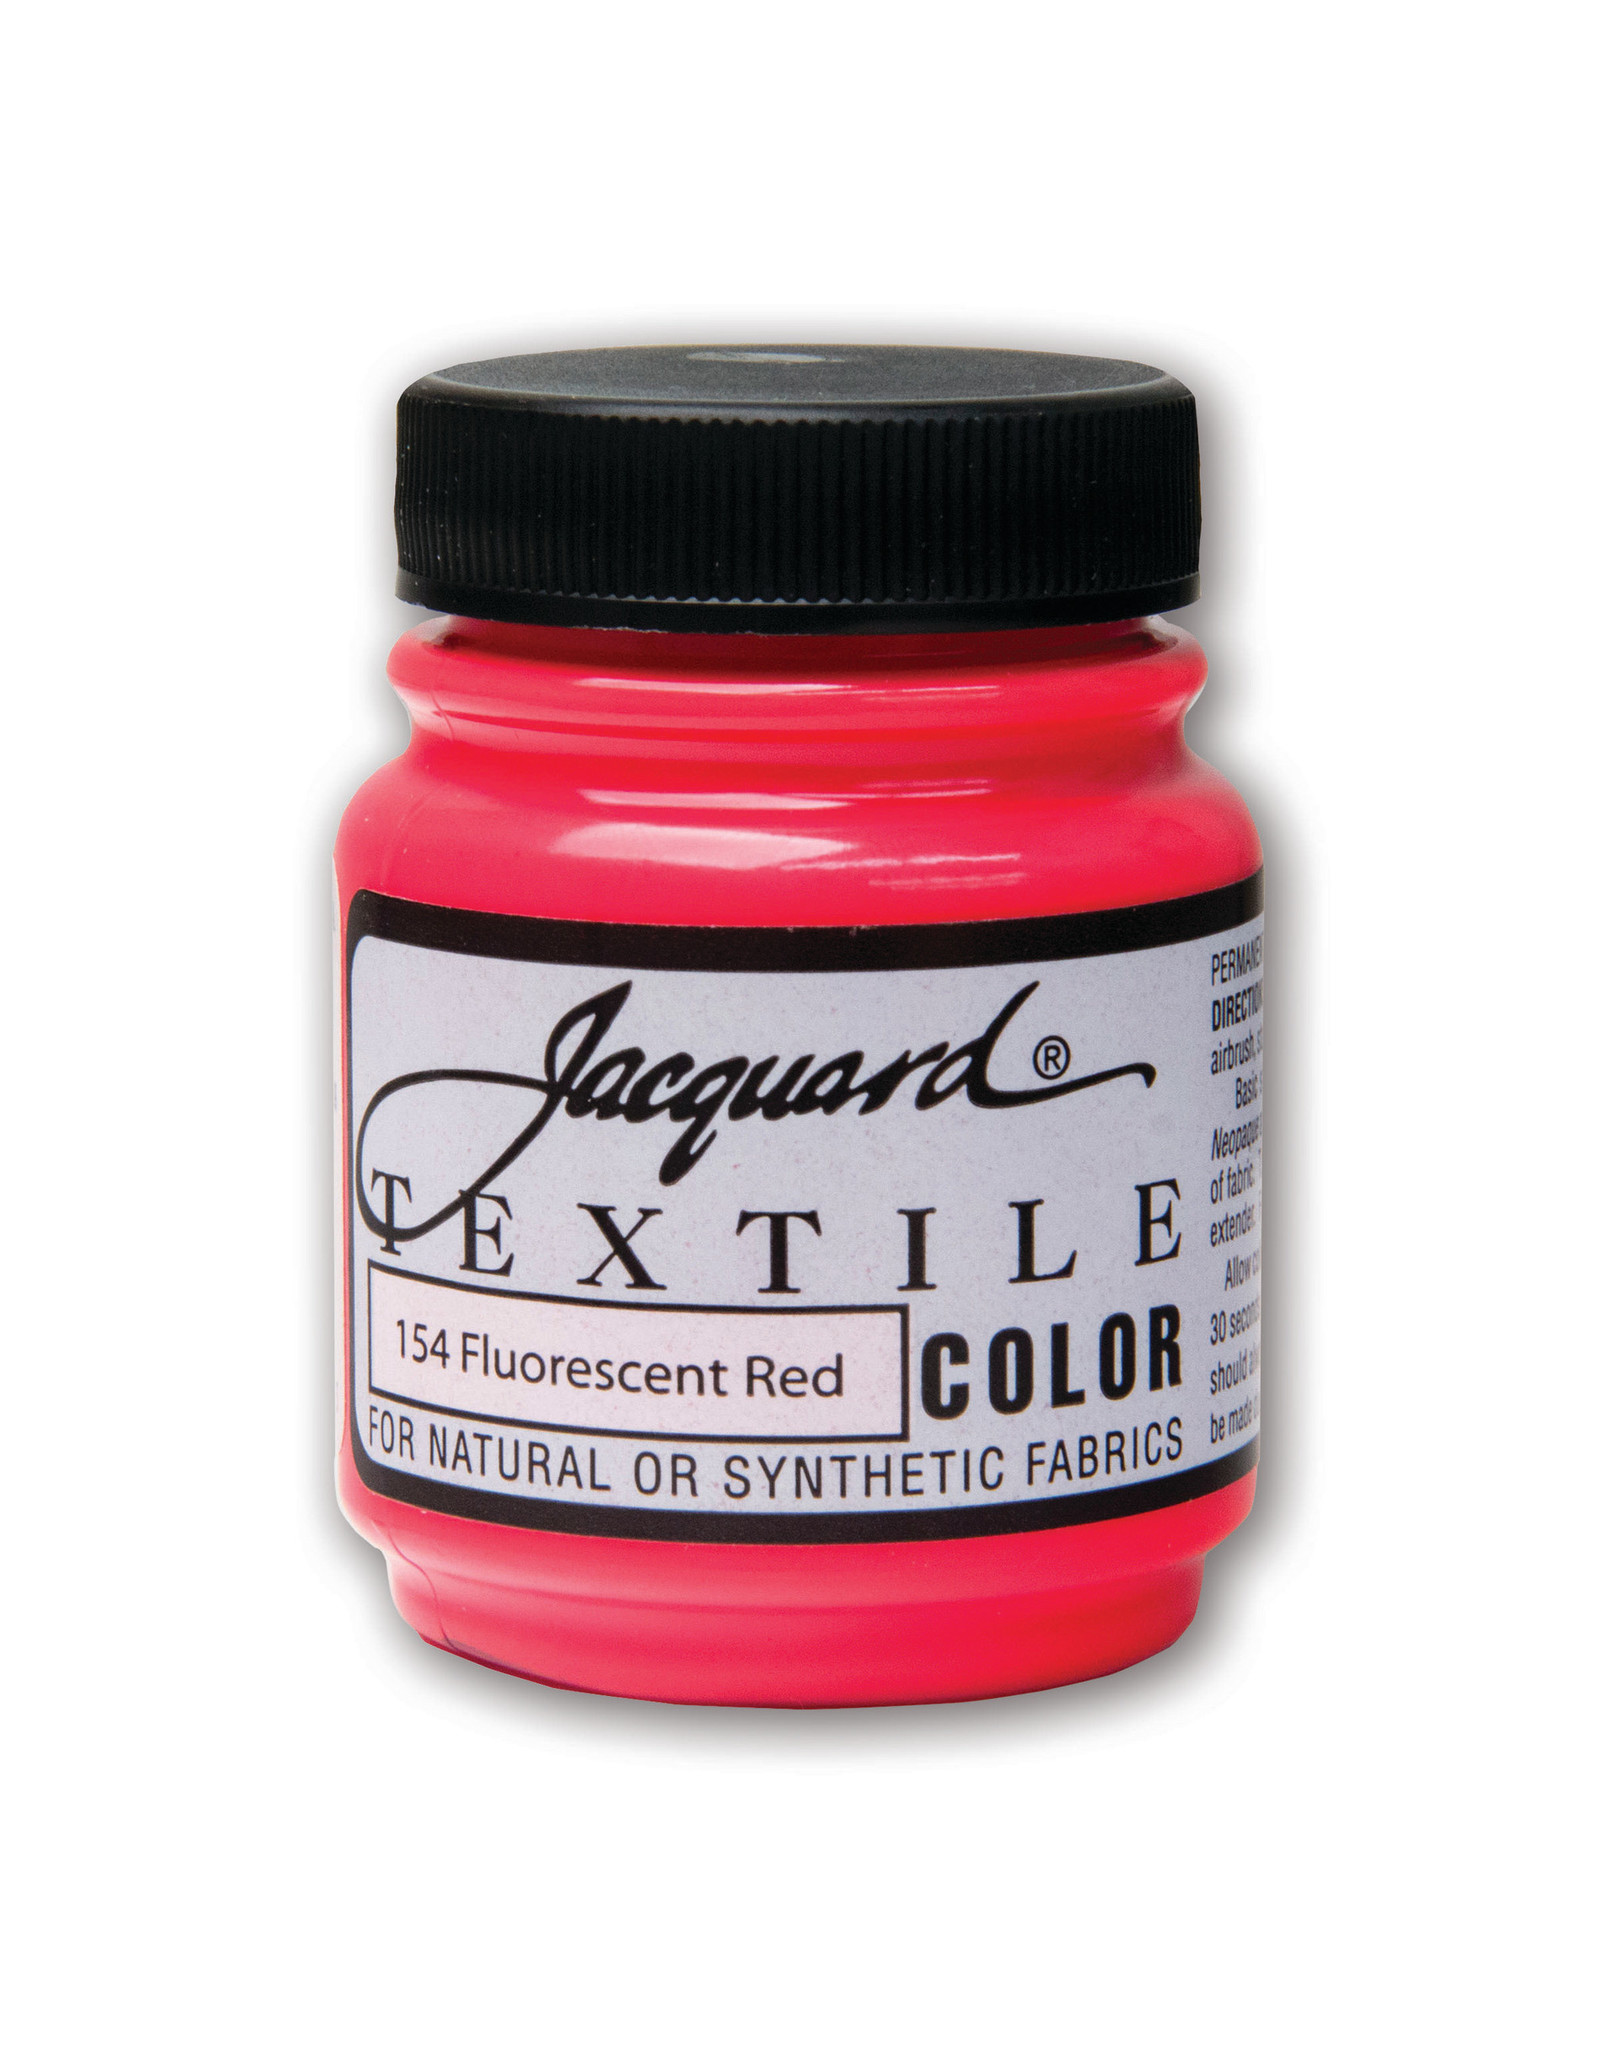 Jacquard® Textile Color Fabric Paint, 8oz.